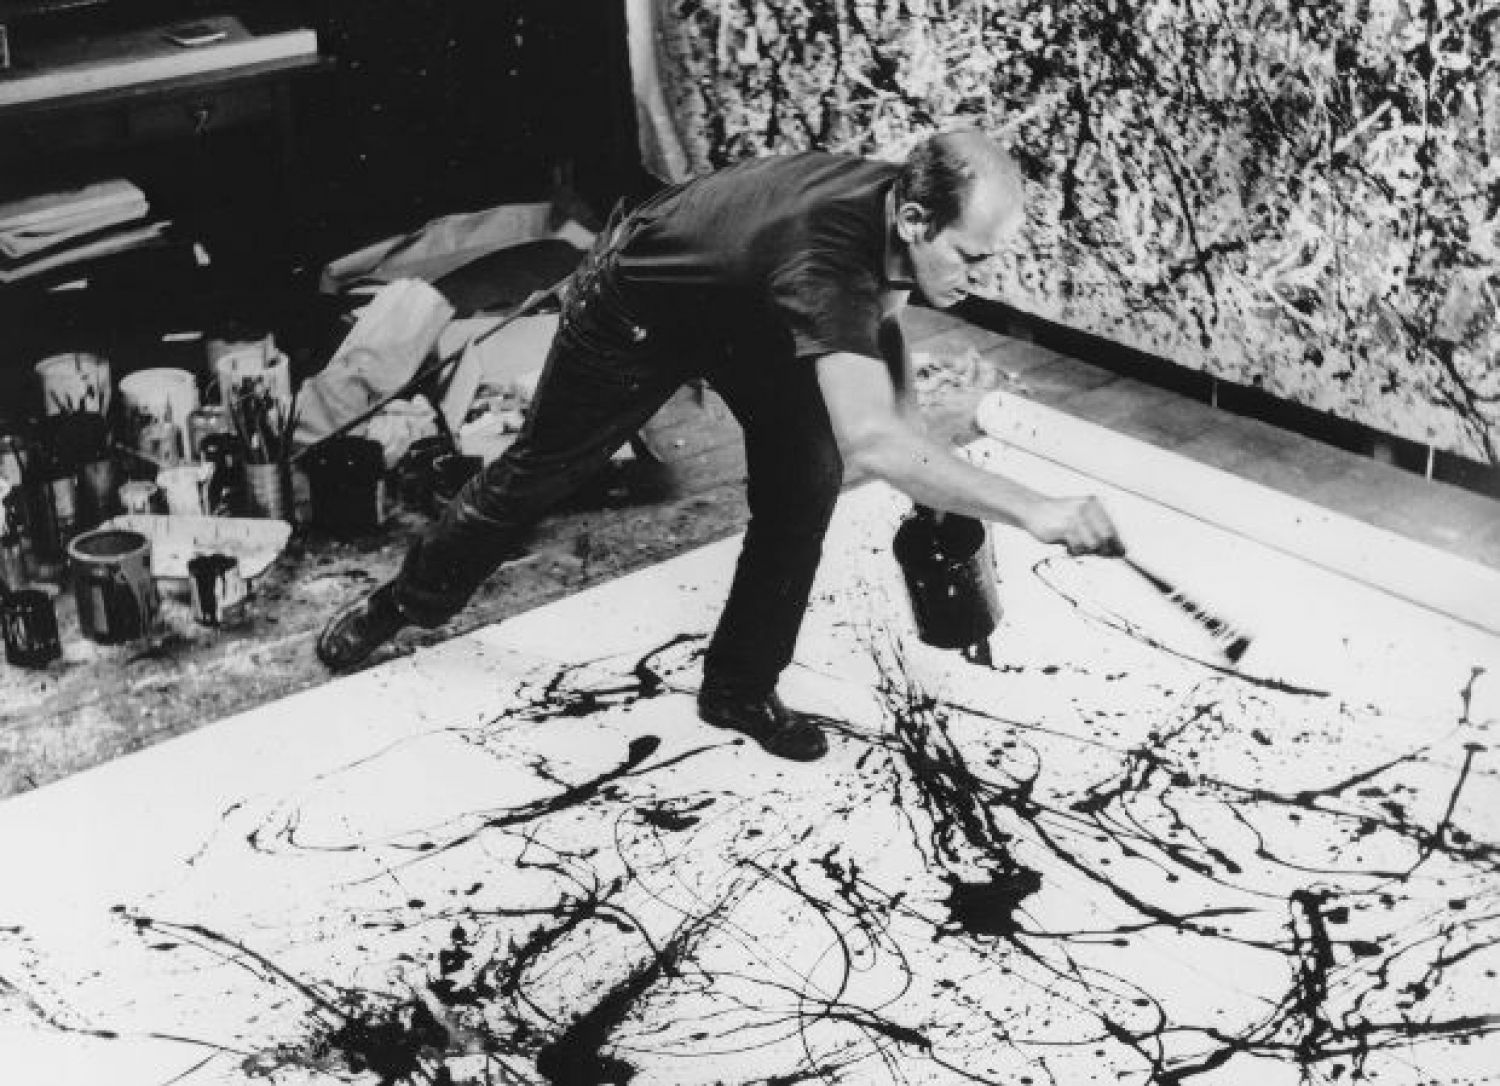 Jackson Pollock, The artist at work, 1950